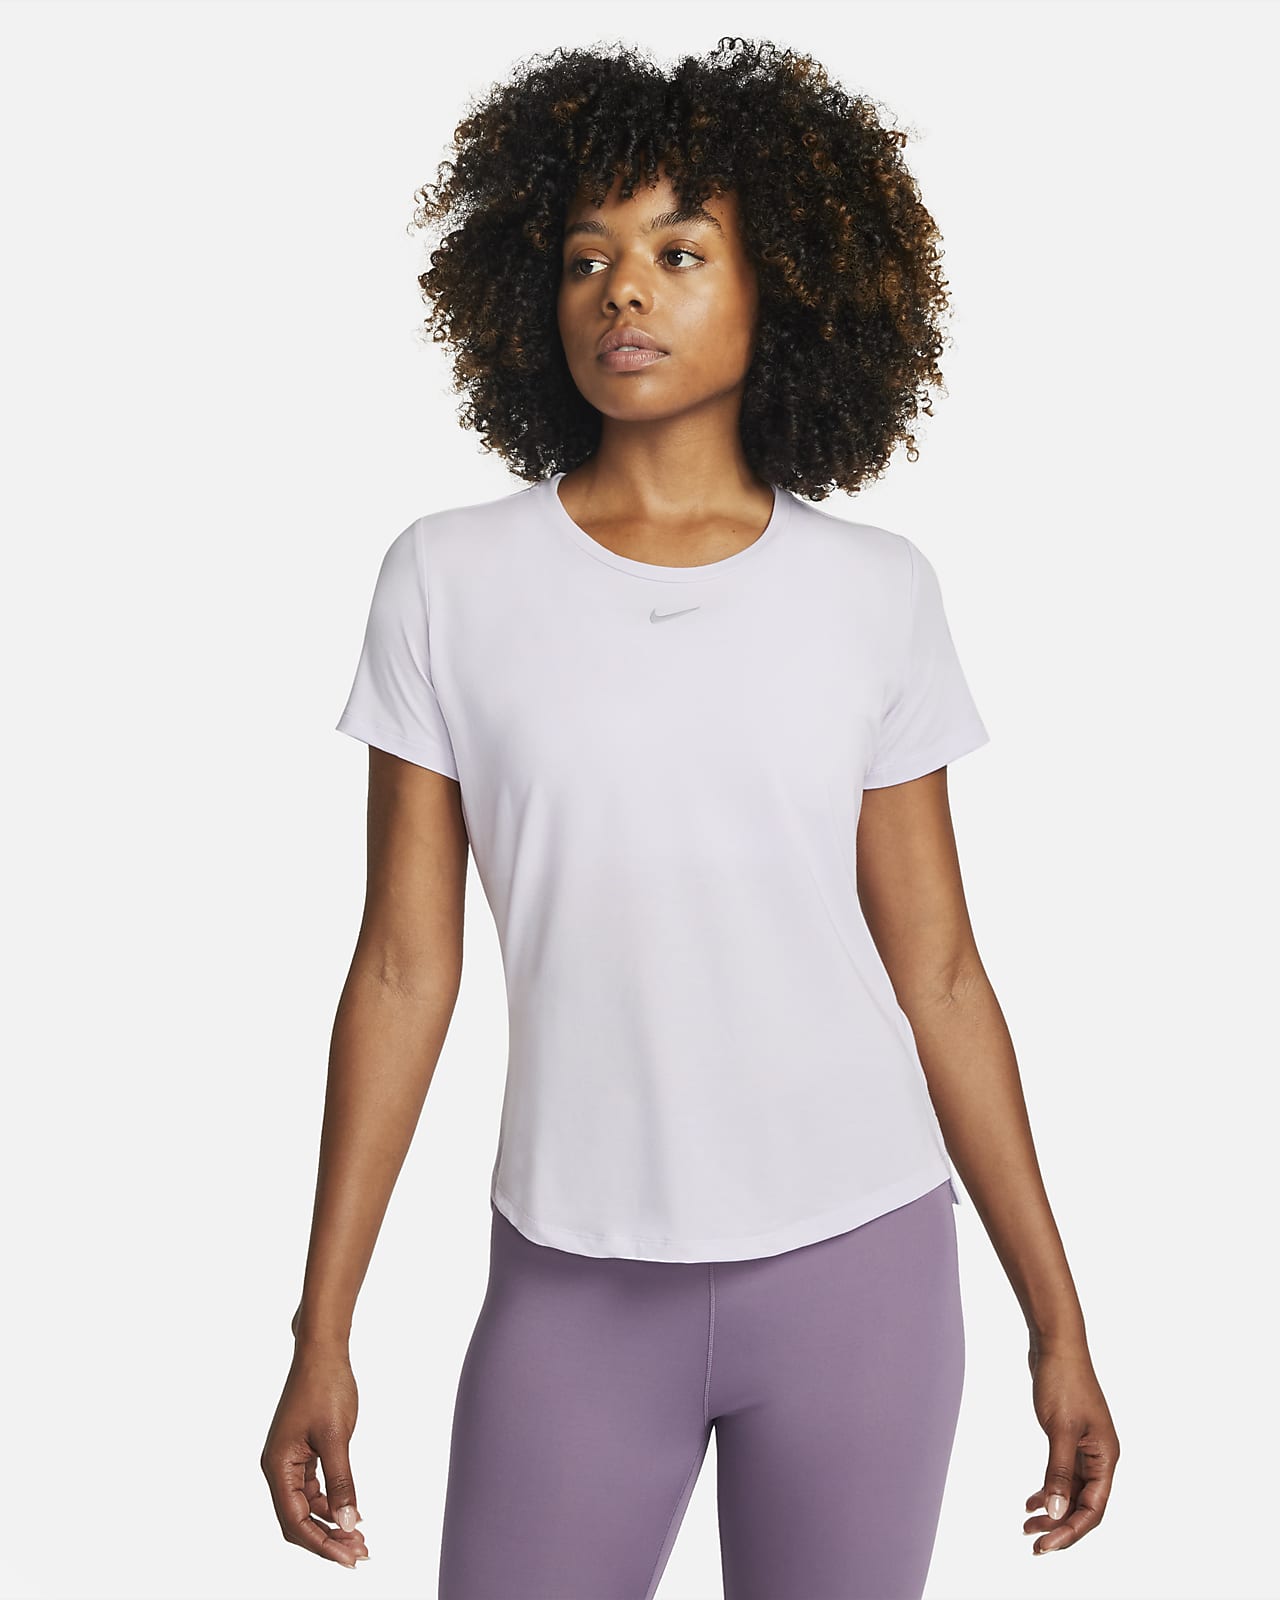 Γυναικεία κοντομάνικη μπλούζα με κανονική εφαρμογή Nike Dri-FIT UV One Luxe